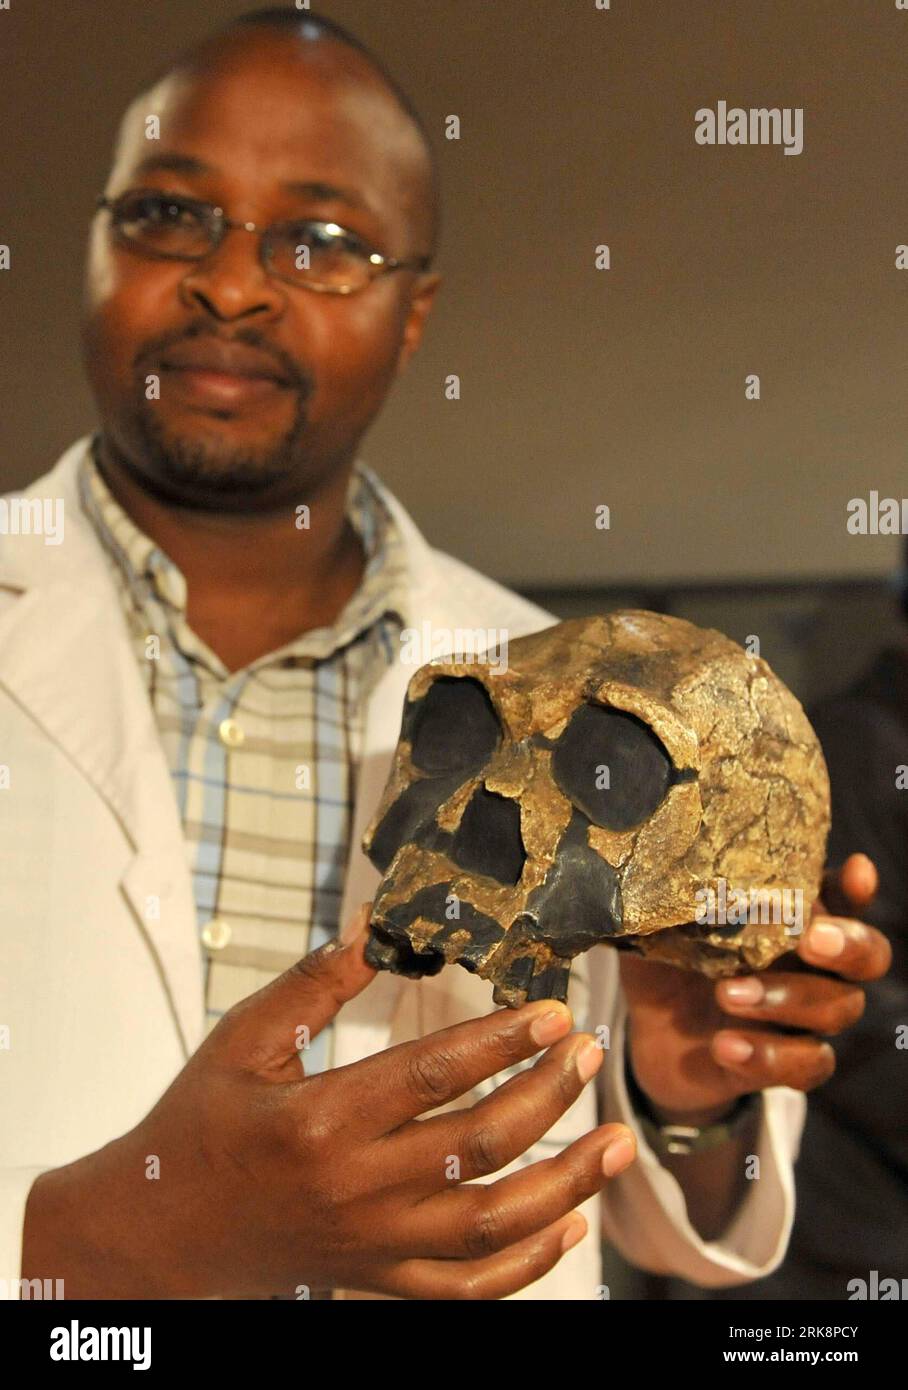 Bildnummer: 54064140 Datum: 20.05.2010 Copyright: imago/Xinhua (100520) -- NAIROBI, 20 maggio 2010 (Xinhua) -- Un membro dello staff mostra un modello di simulazione di alta qualità di un cranio paleoantropico nel Museo Nazionale del Kenya a Nairobi, capitale del Kenya, 20 maggio 2010. In occasione della giornata Mondiale dei Musei, il centro di ricerca del Museo Nazionale del Kenya è parzialmente aperto al pubblico dal 18 al 24 maggio, dove i visitatori potranno vedere molti fossili paleoantropici tra cui lo scheletro di Turkana Boy. (Xinhua/Xu Suhui) (gxr) (4)KENYA-NAIROBI-NATIONAL MUSEUM-FOSSIL PUBLICATIONxNOTxINxCHN premiumd xint Gesellschaft Kul Foto Stock